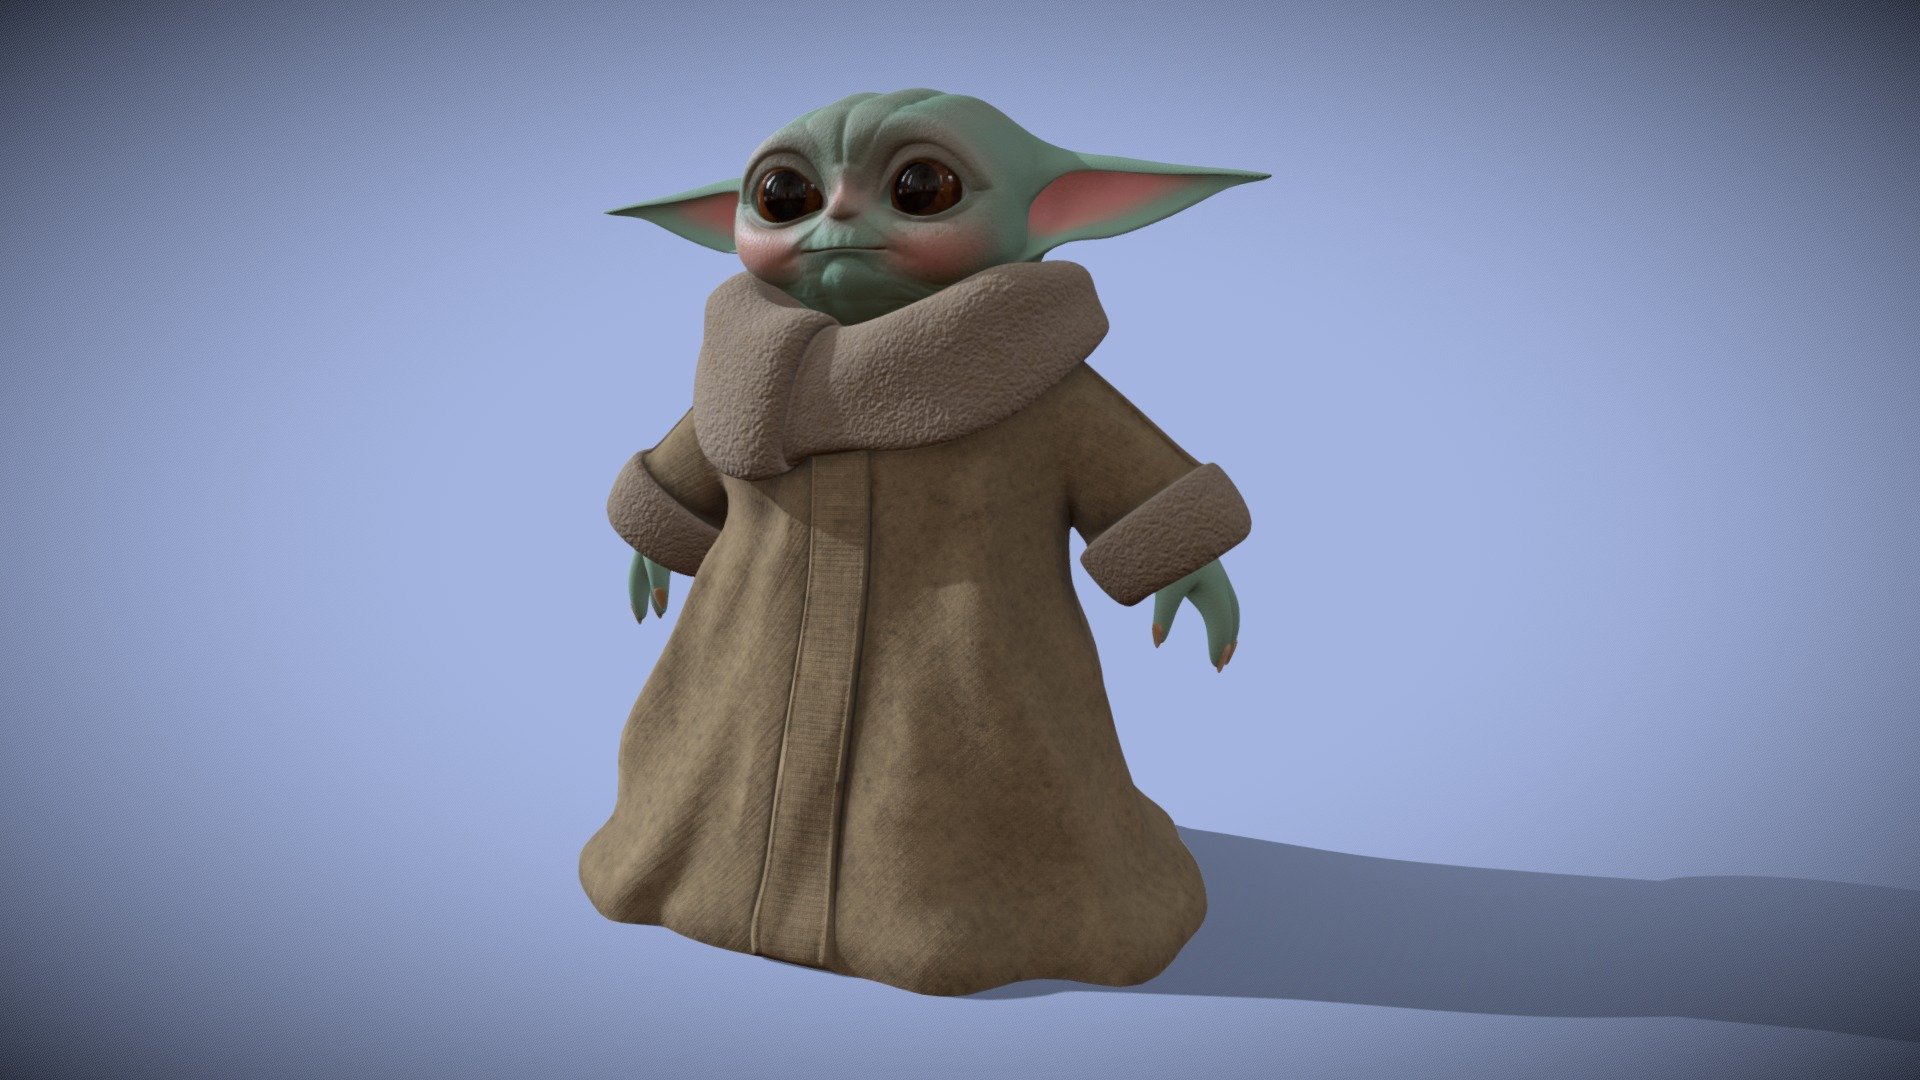 Google adiciona Grogu (Baby Yoda) como objeto 3D na busca – Tecnoblog